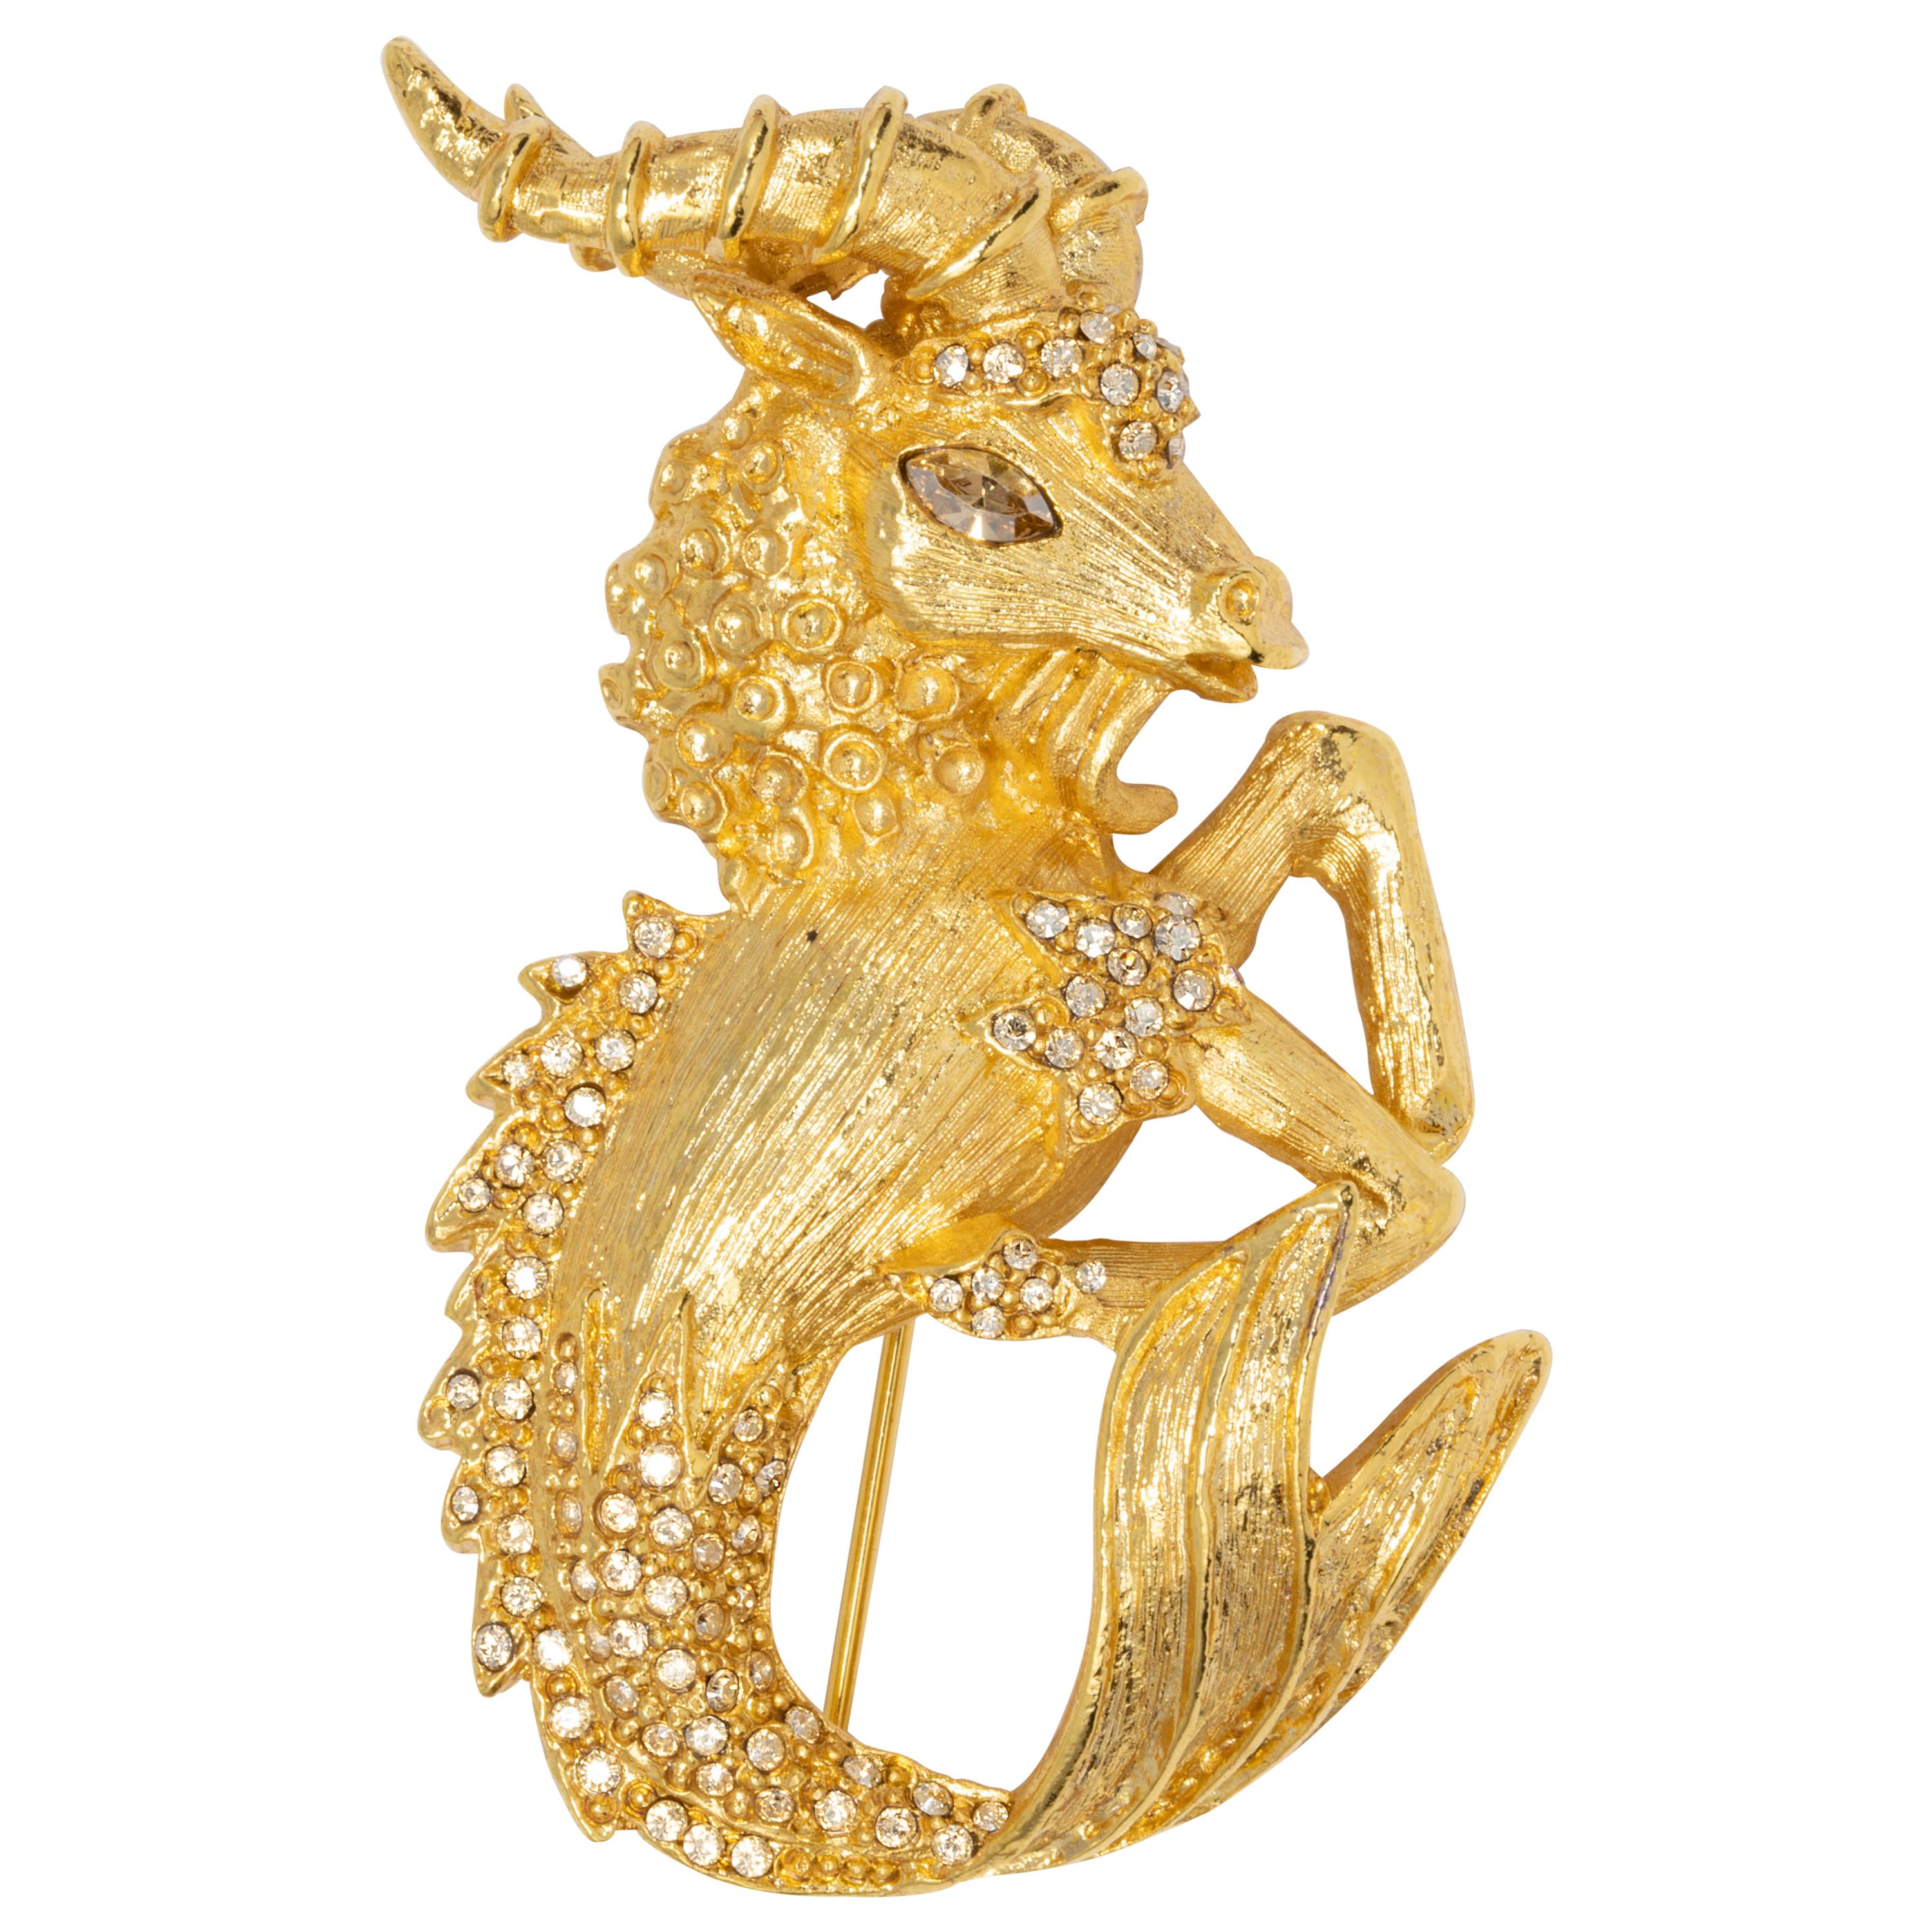 Oscar de la Renta Gold Ram Pin Brooch, with Gold Shadow Swarovski Crystals